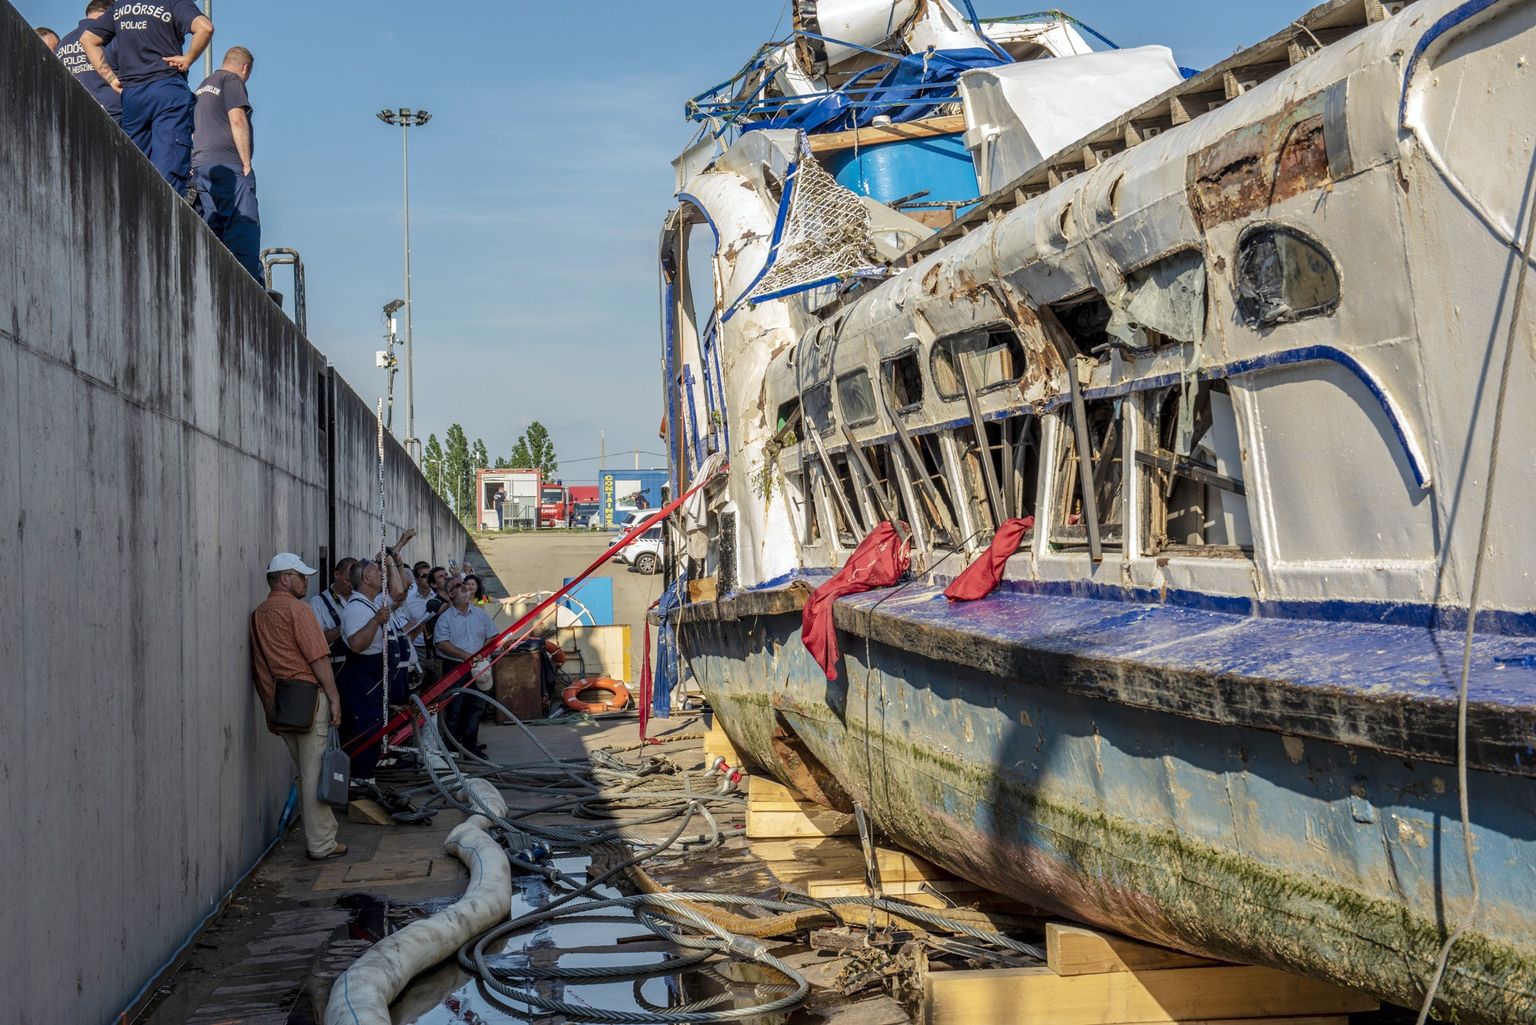 Ungari politsei uuris 11. juunil pinnale tõstetud ekskursioonilaeva Hableany vrakki